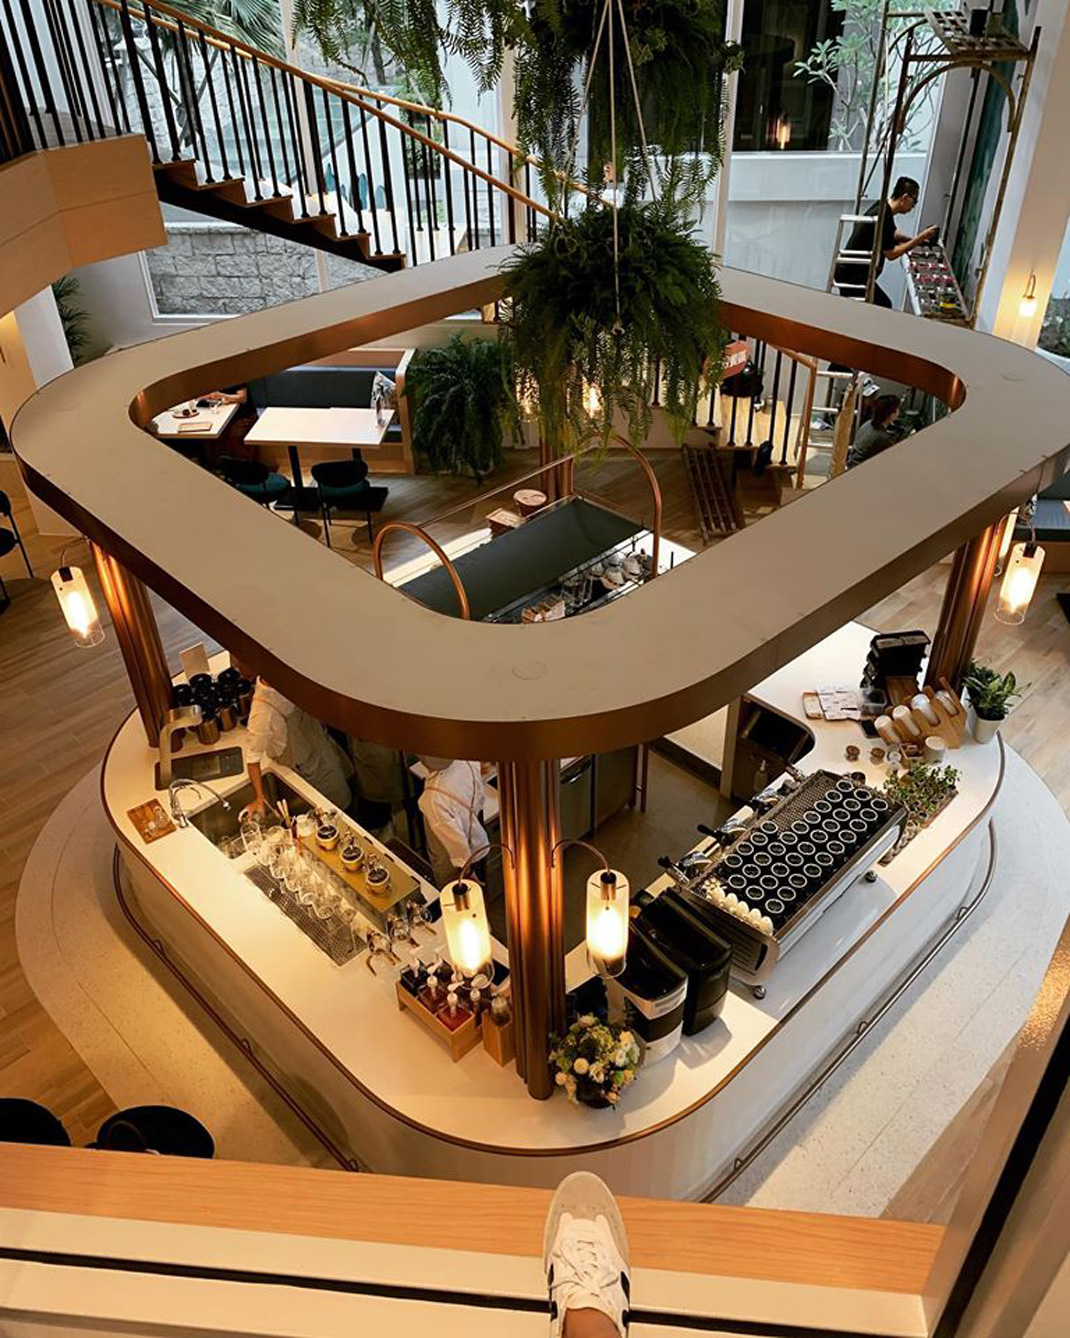 kafeD-咖啡滴 台湾 咖啡店 拱形 亚克力 图形设计 logo设计 vi设计 空间设计